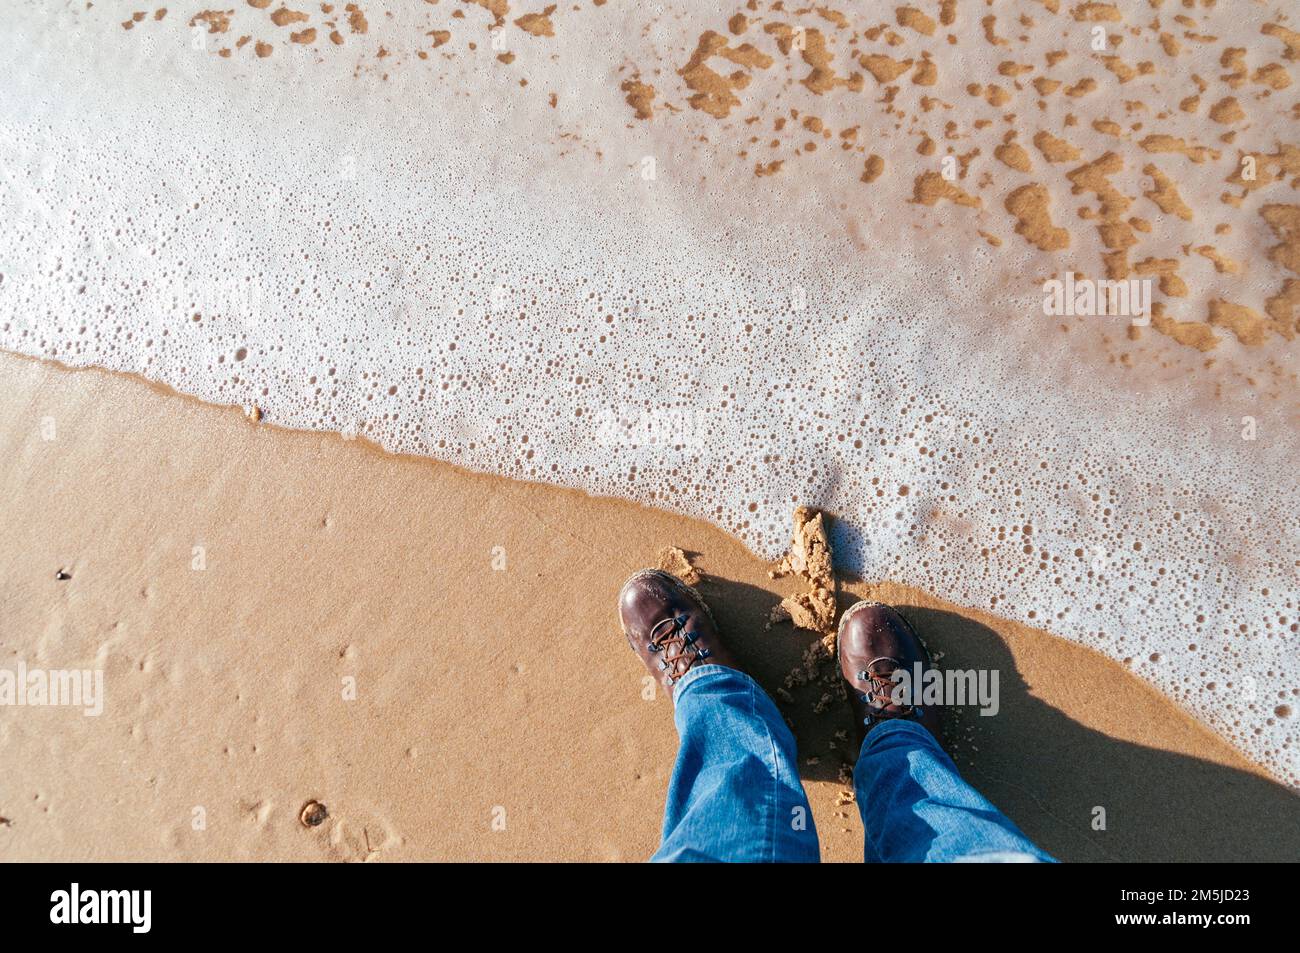 Hombre en jeans y botas de pie en una playa en Francia en diciembre mirando hacia abajo Foto de stock